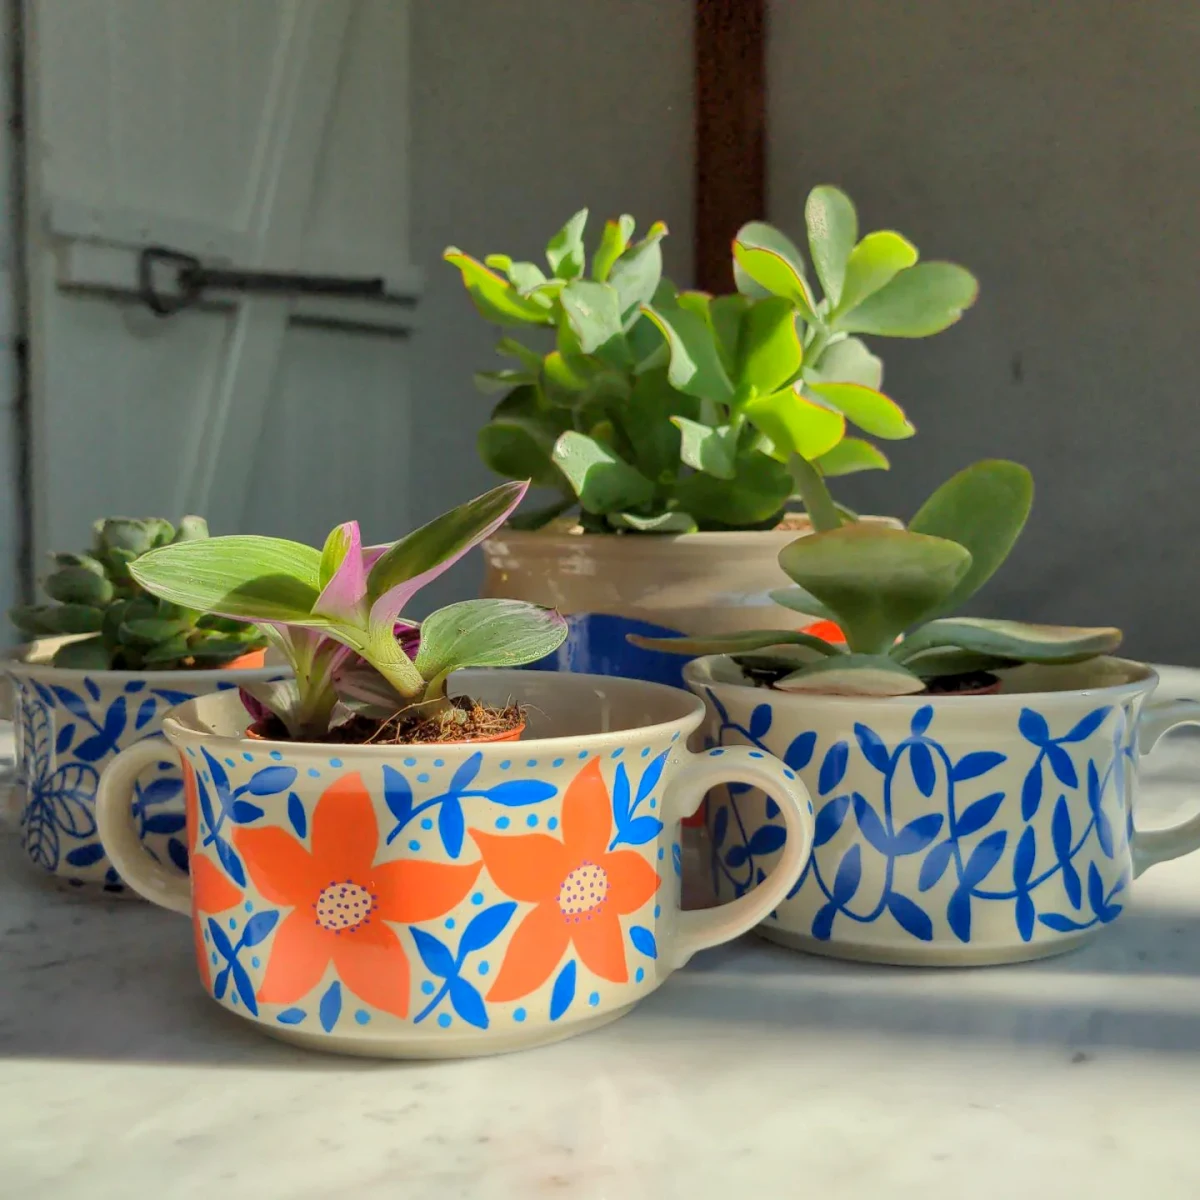 petite plantes dans des pots colores pour le balcon facile a entretenir